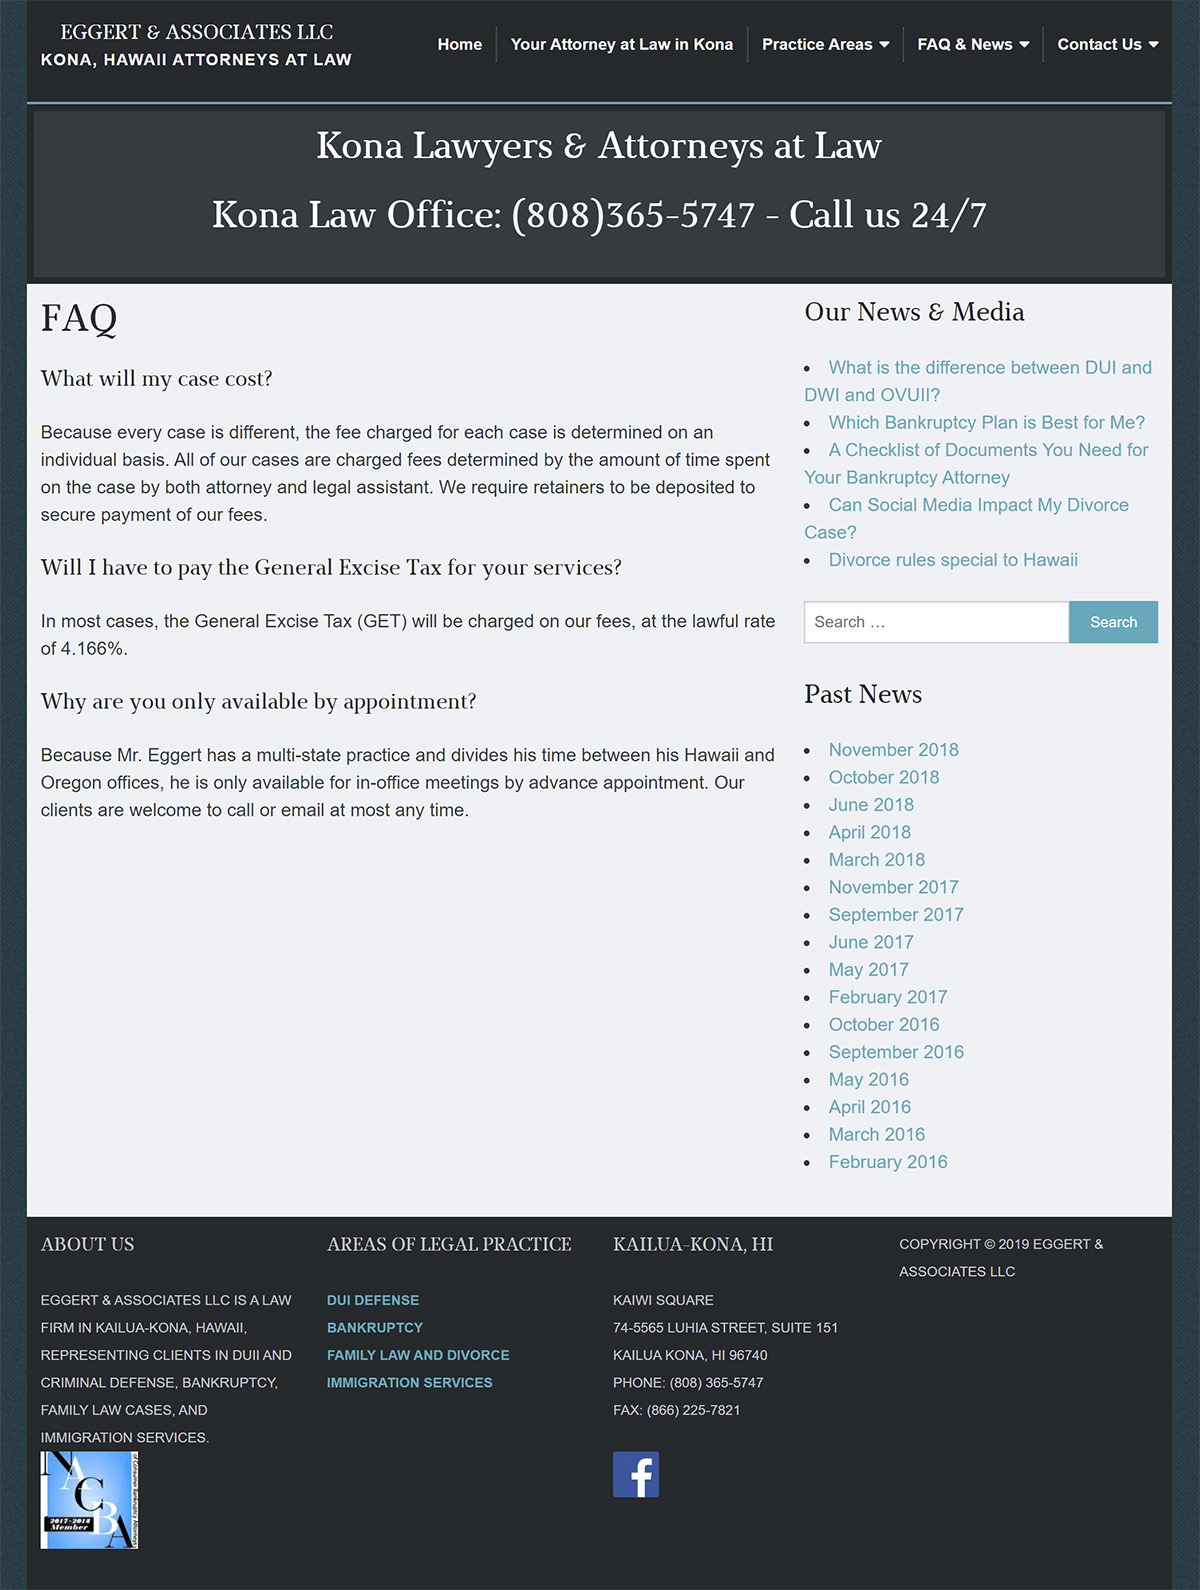 Eggert & Associates Kona FAQ page before redesign